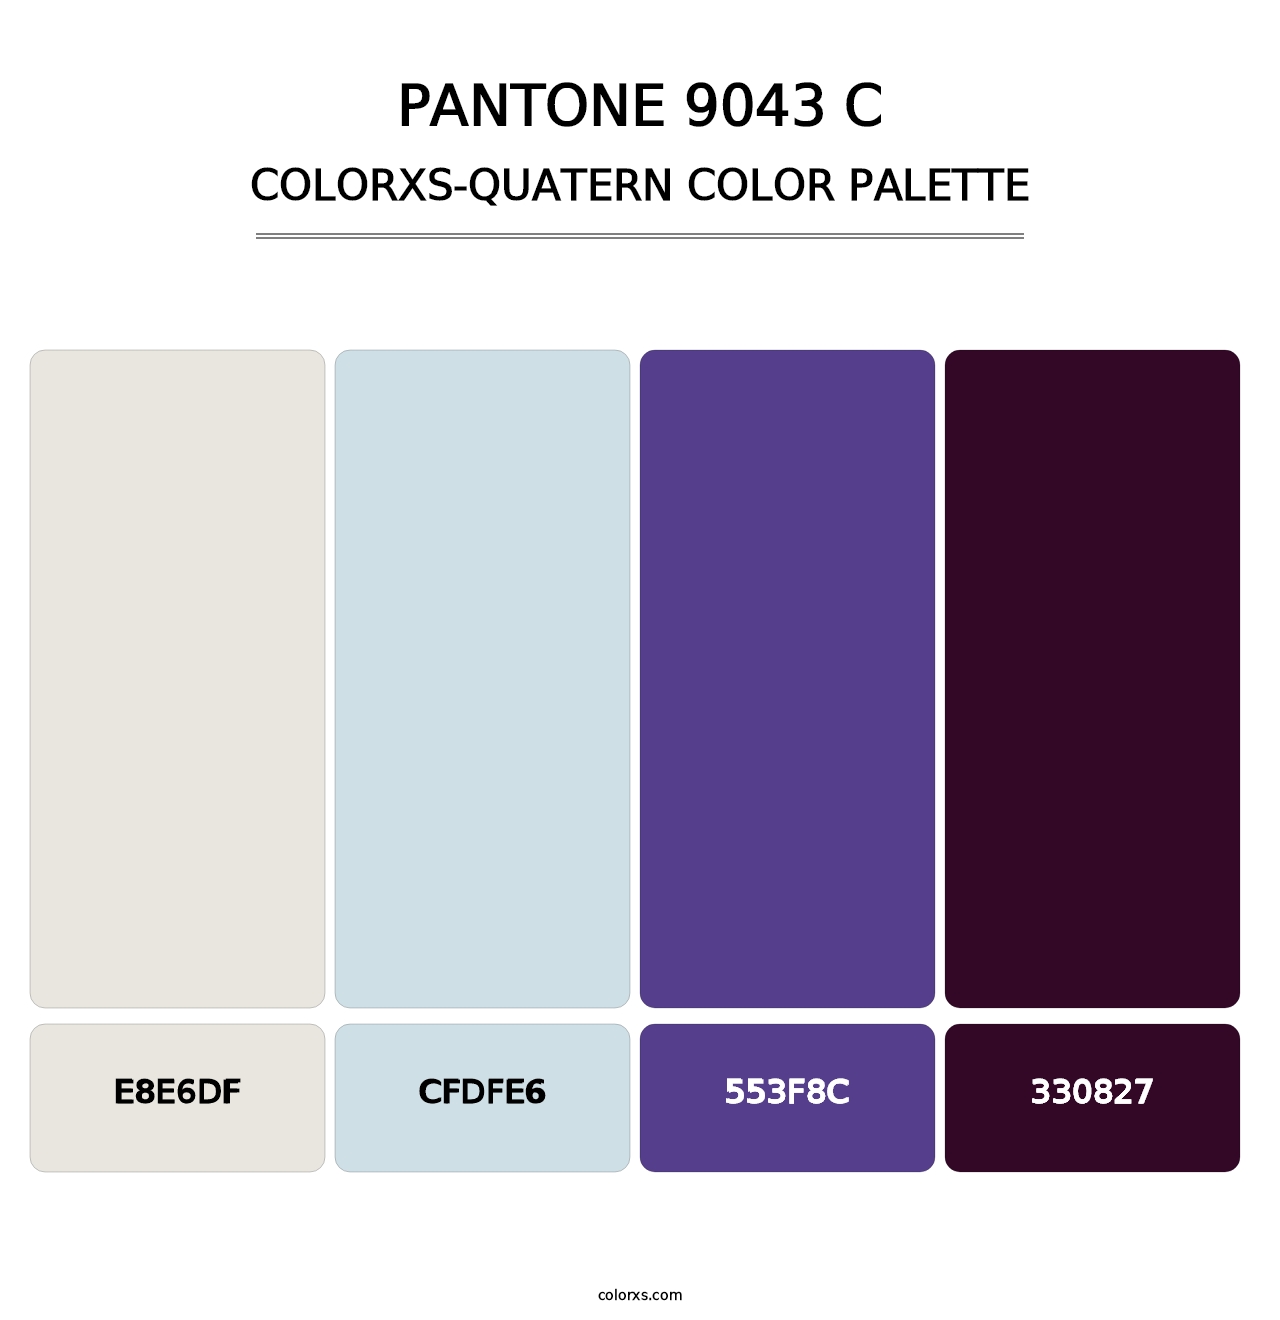 PANTONE 9043 C - Colorxs Quatern Palette